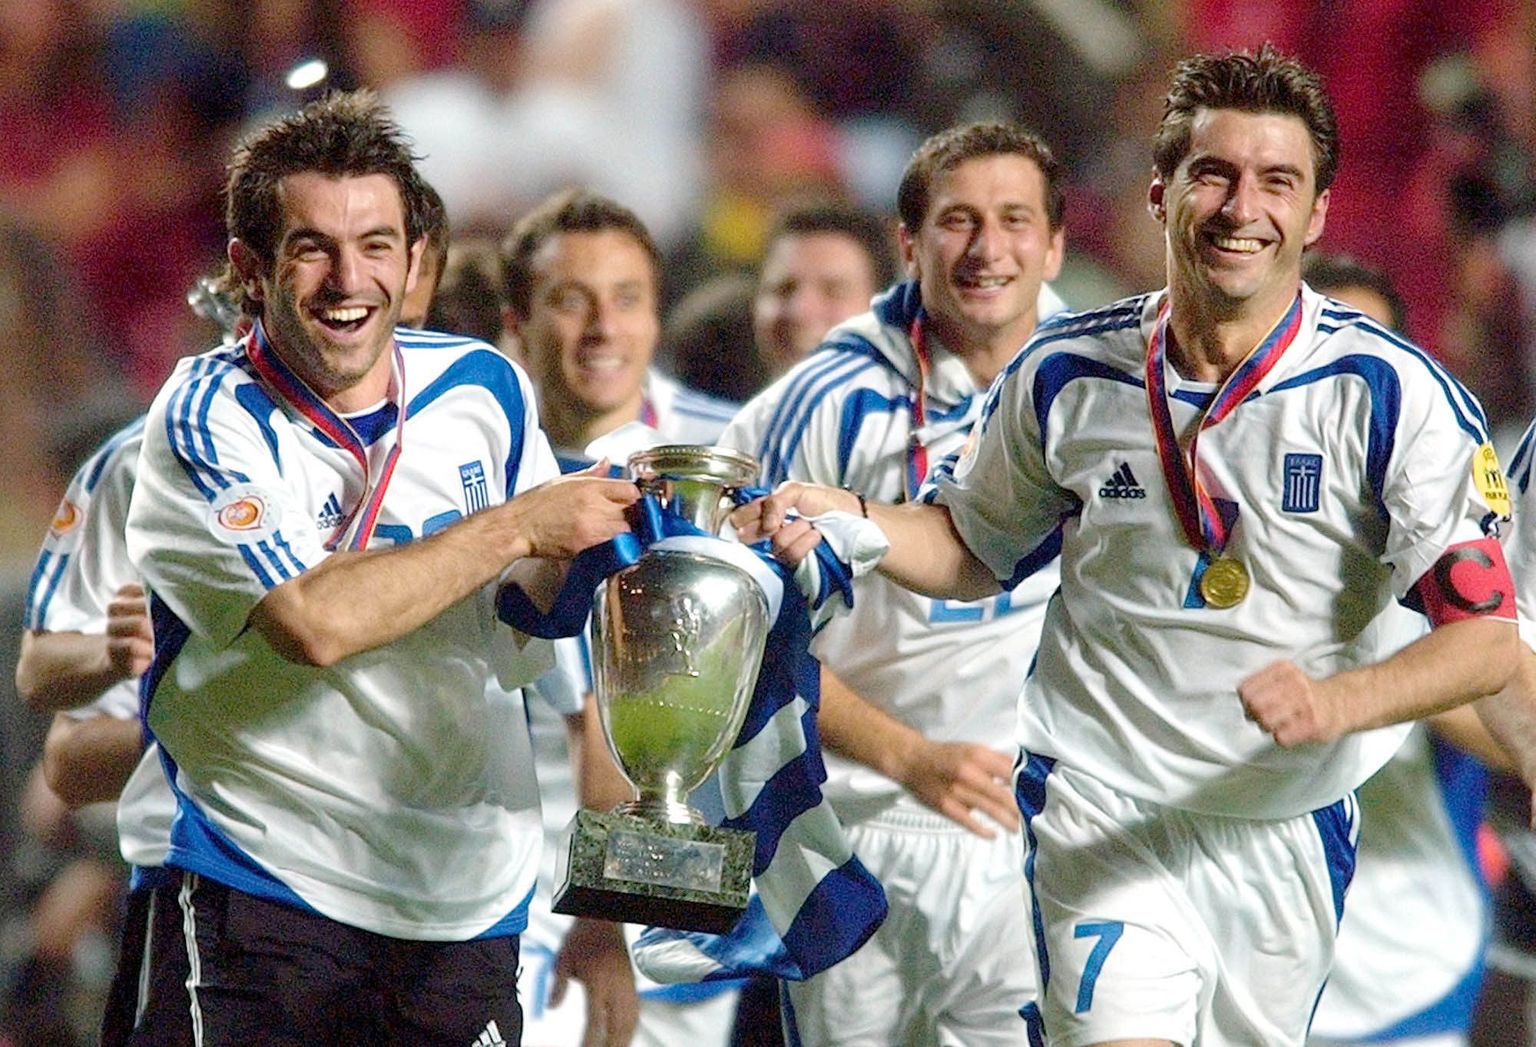 Kreeka koondislased Georgios Karagounis (vasakul) ja Theodoros Zagorakis 2004. aasta EM-finaali järel Euroopa meistrikarikaga võitu tähistamas. Finaalis alistati 1:0 Portugal.